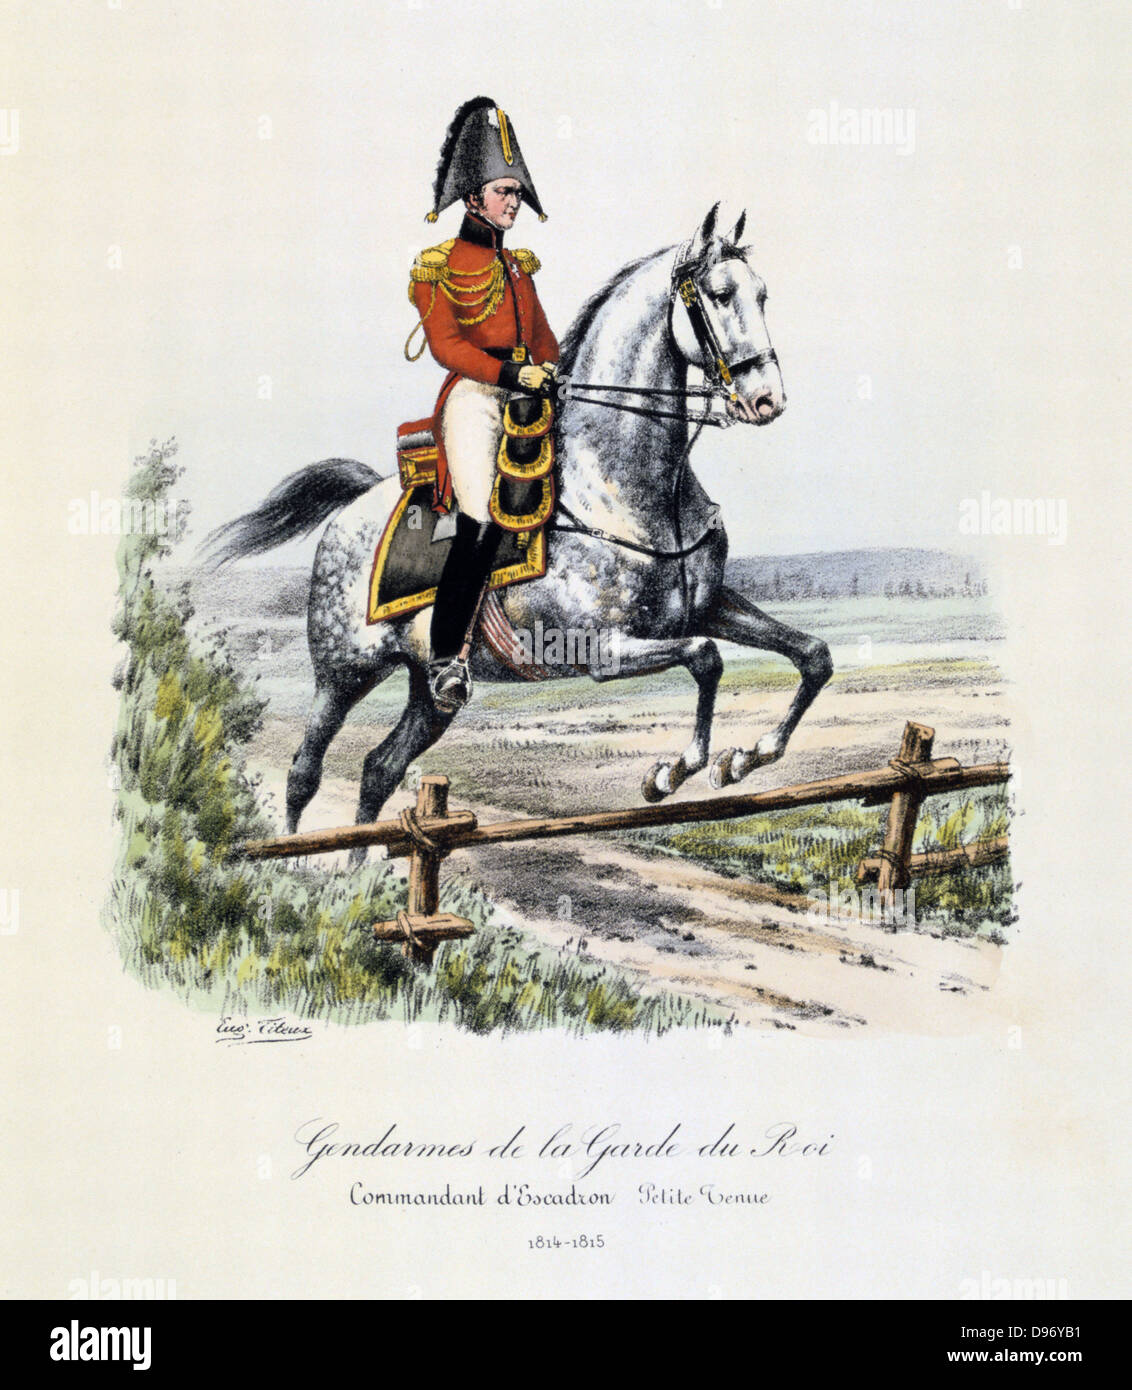 Company Commandant of the Gendarmes of the Royal Guard, 1814-1815. From 'Histoire de la maison militaire du Roi de 1814 a 1830' by Eugene Titeux, Paris, 1890. Stock Photo